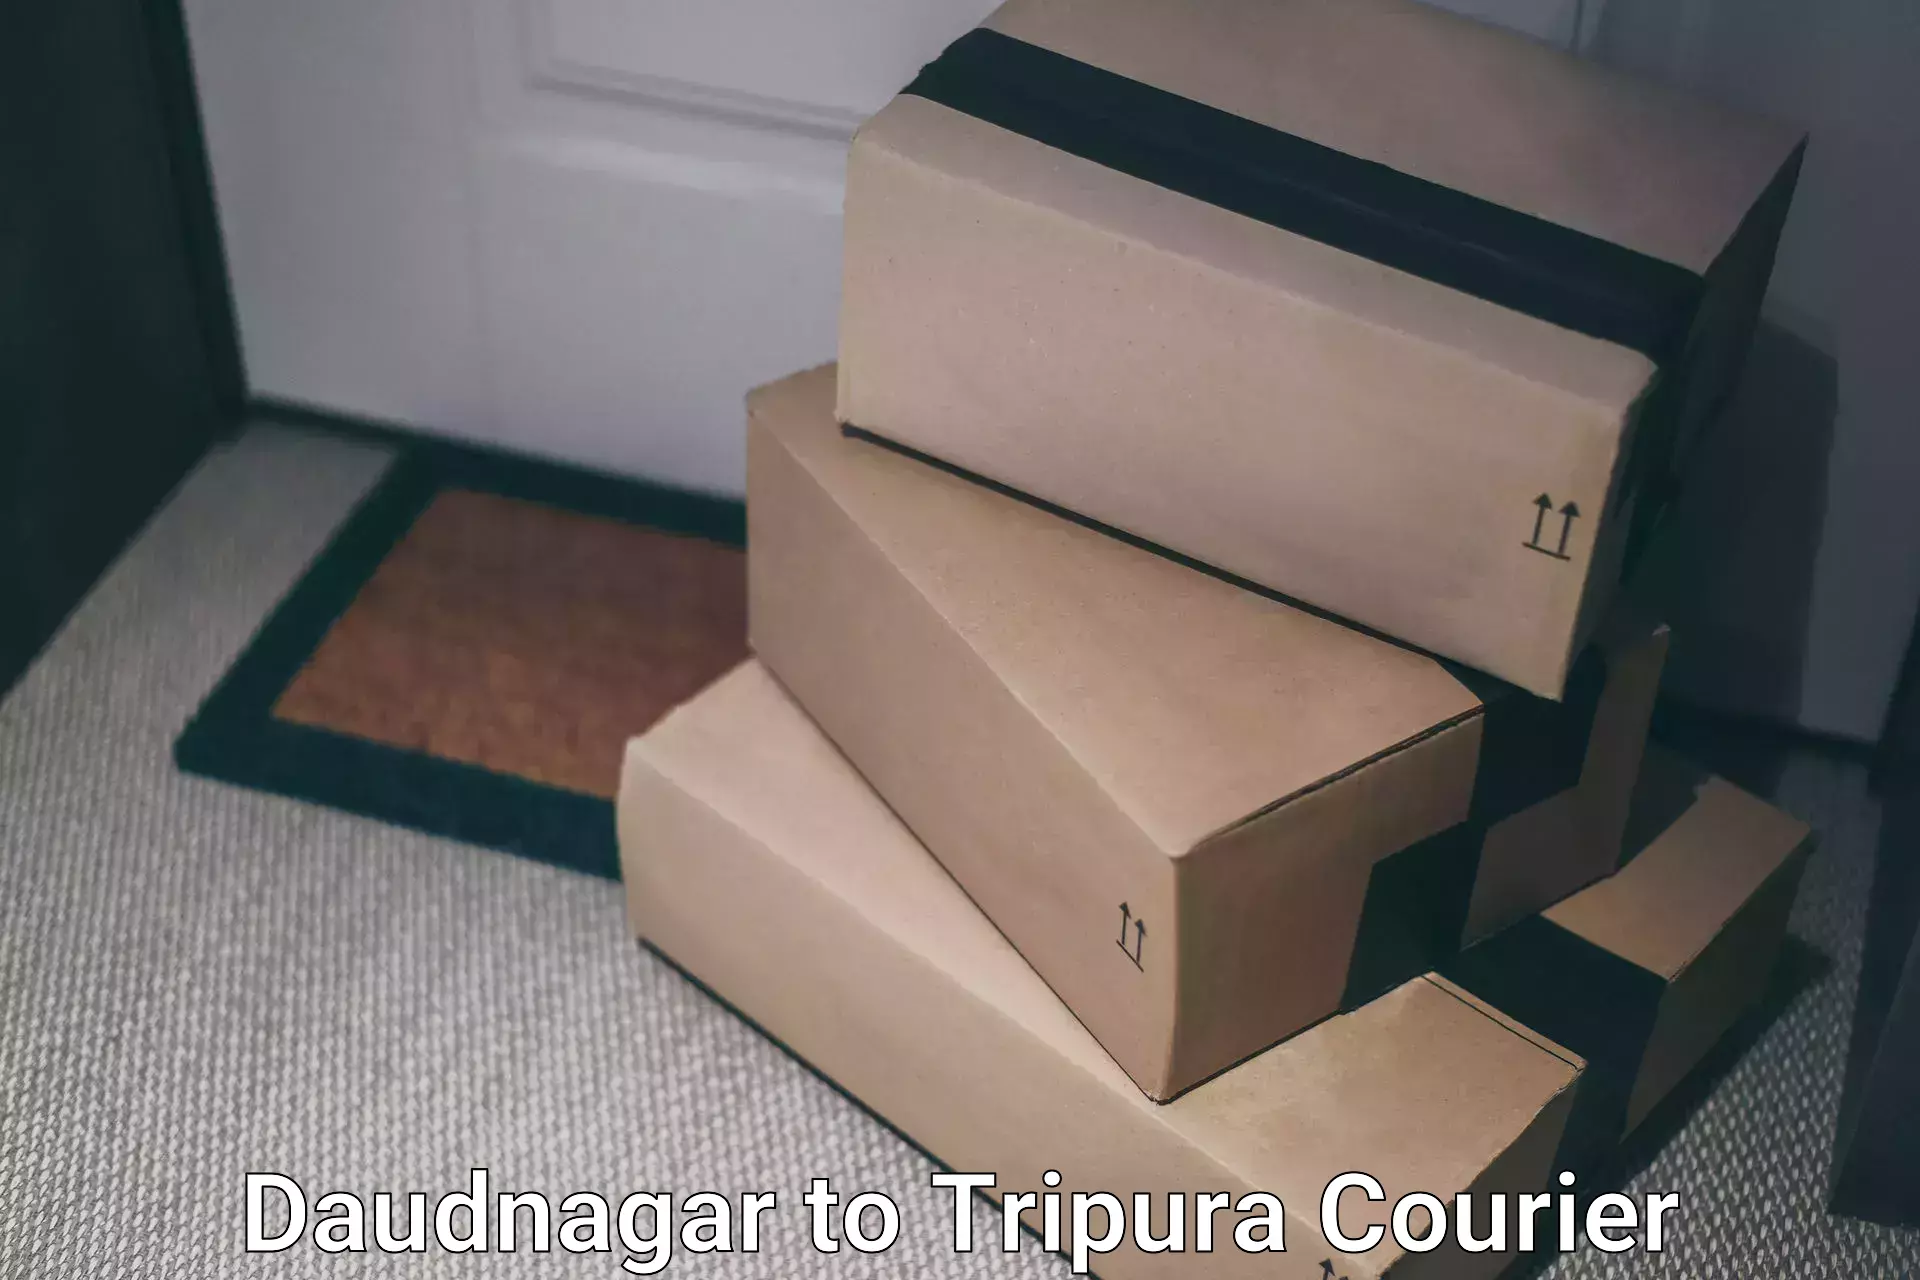 High-capacity shipping options Daudnagar to Dharmanagar